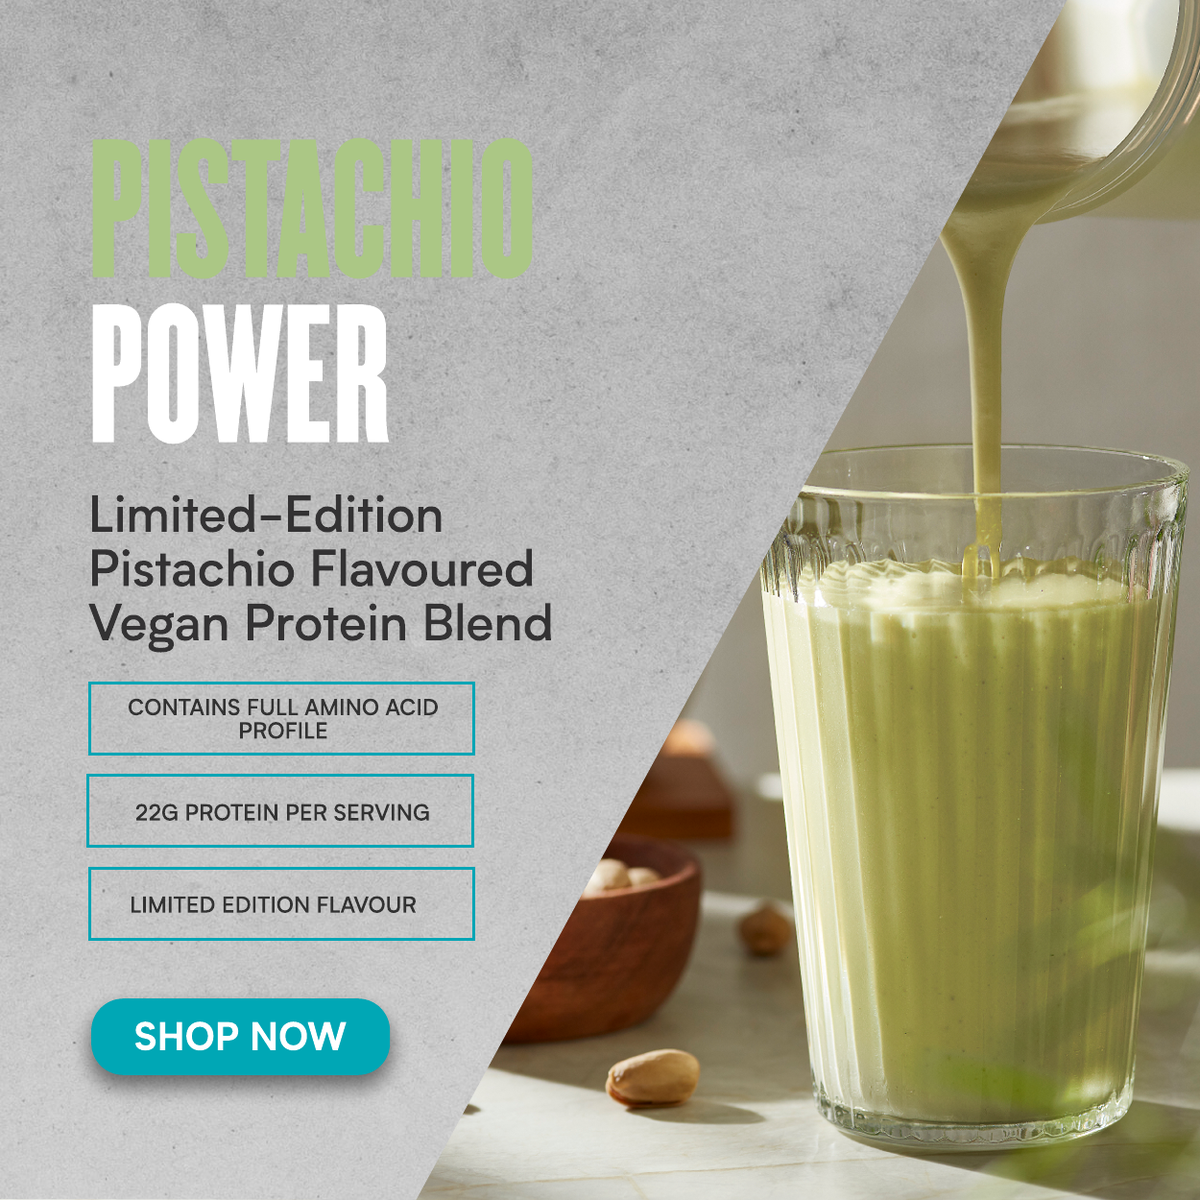 Pistachio Power - New limited edition flavour 'shop now'